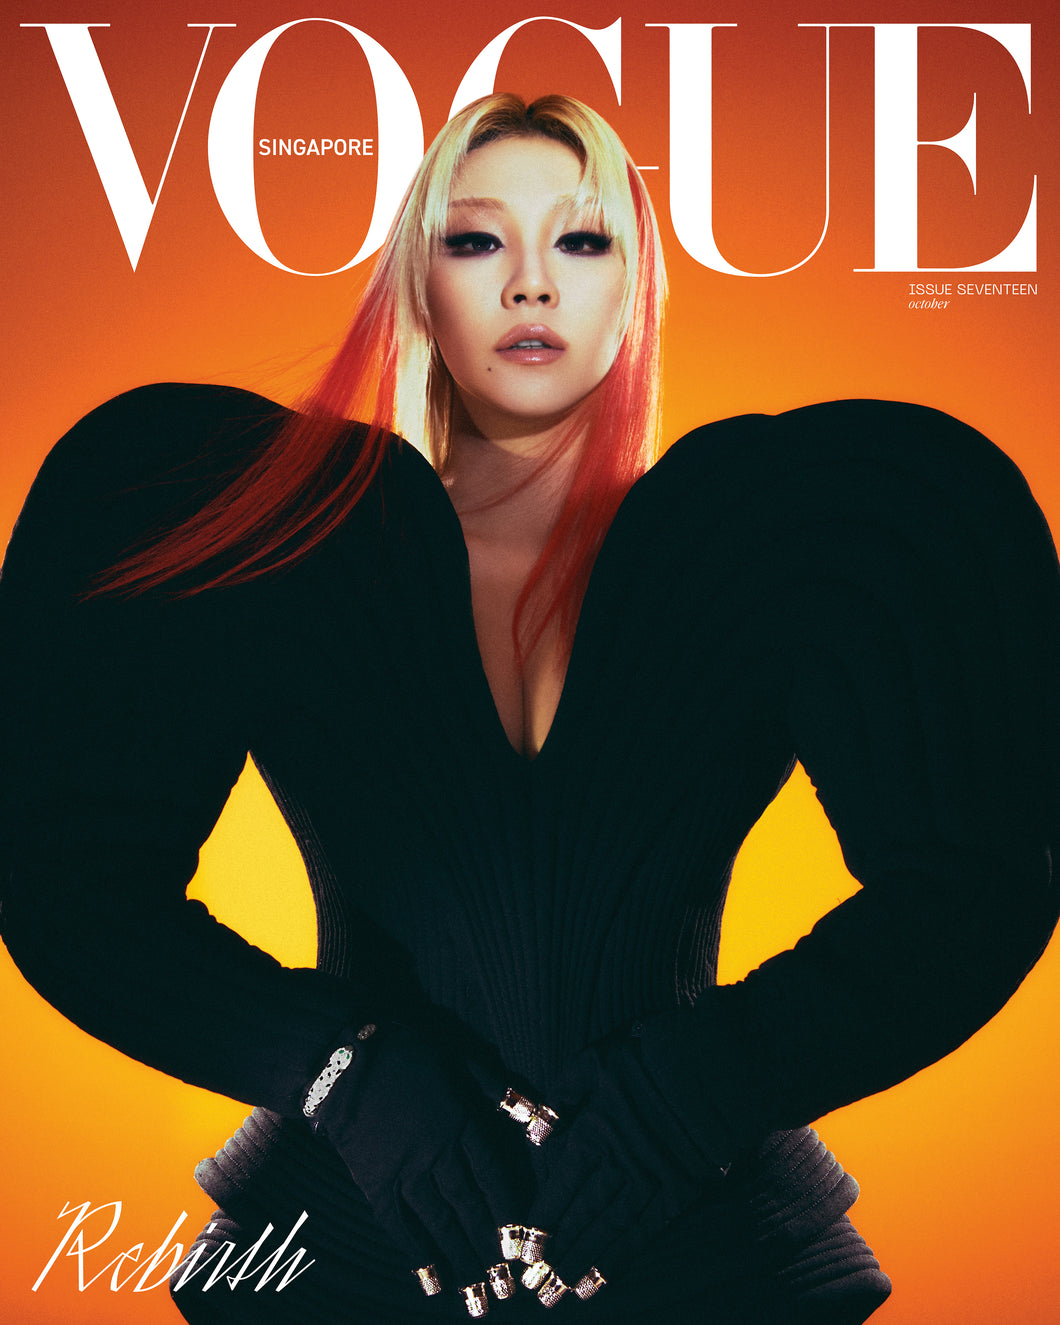 Vogue Singapore: Issue Seventeen, REBIRTH